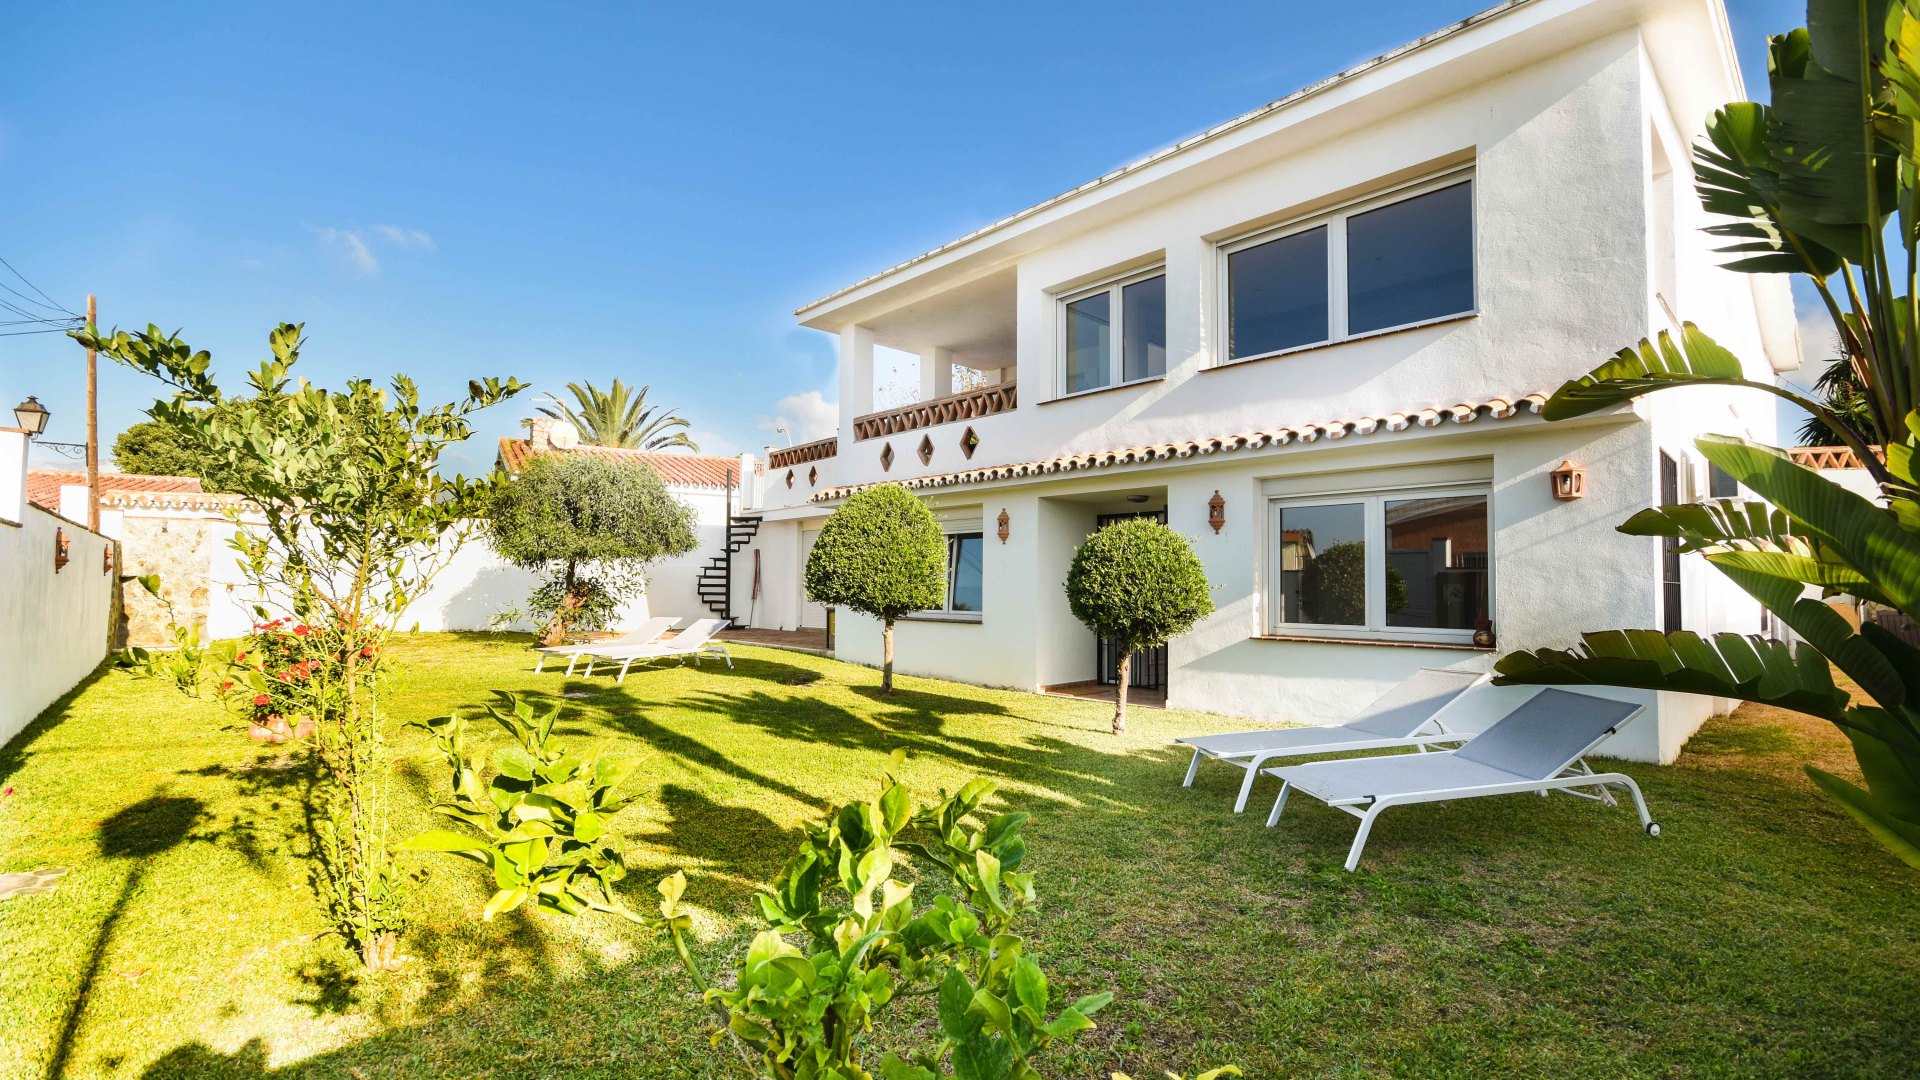 Casa independiente de 4 dormitorios y amueblada en Costabella, Marbella